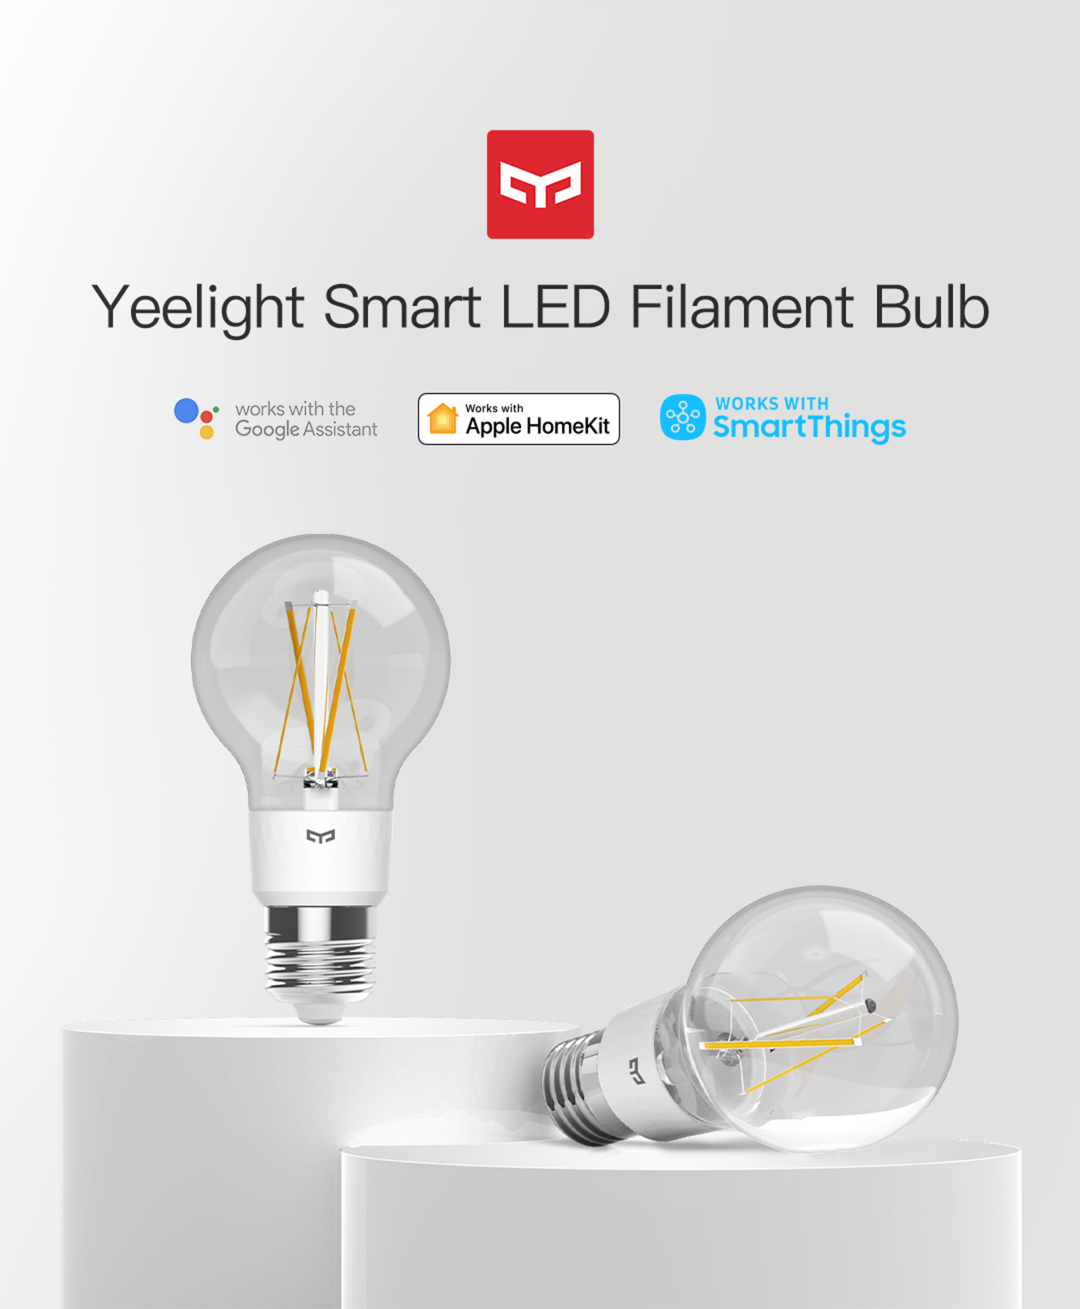 Smart Filament Smart LED Filament Bulb